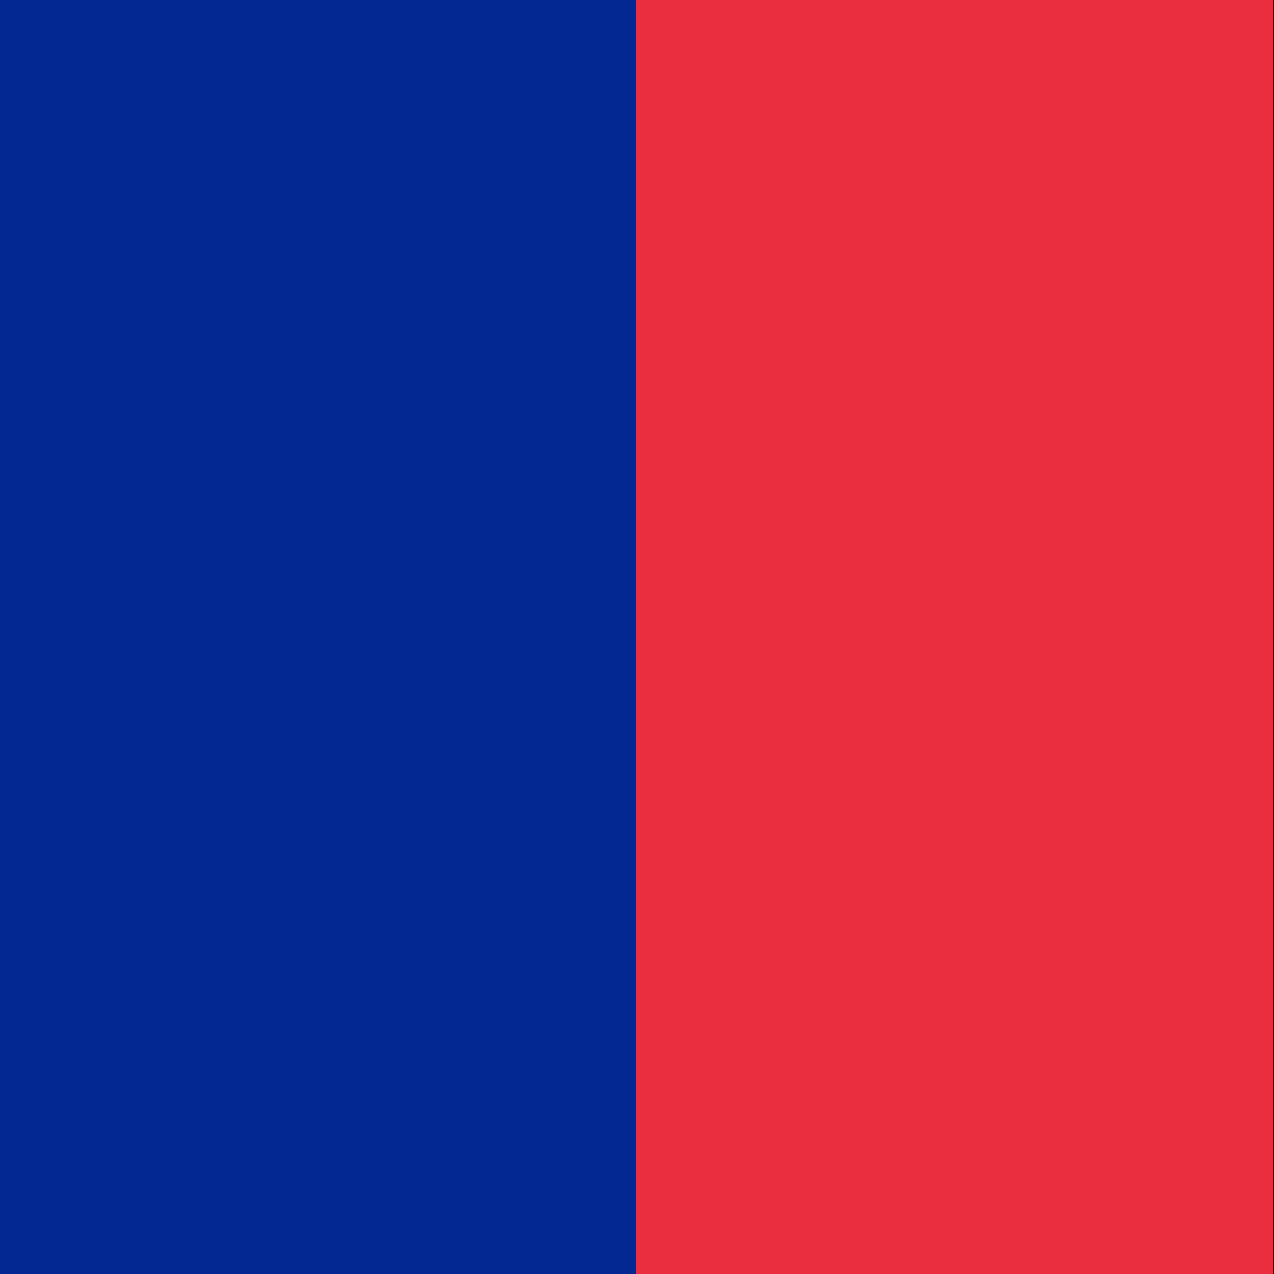 The flag of Paris